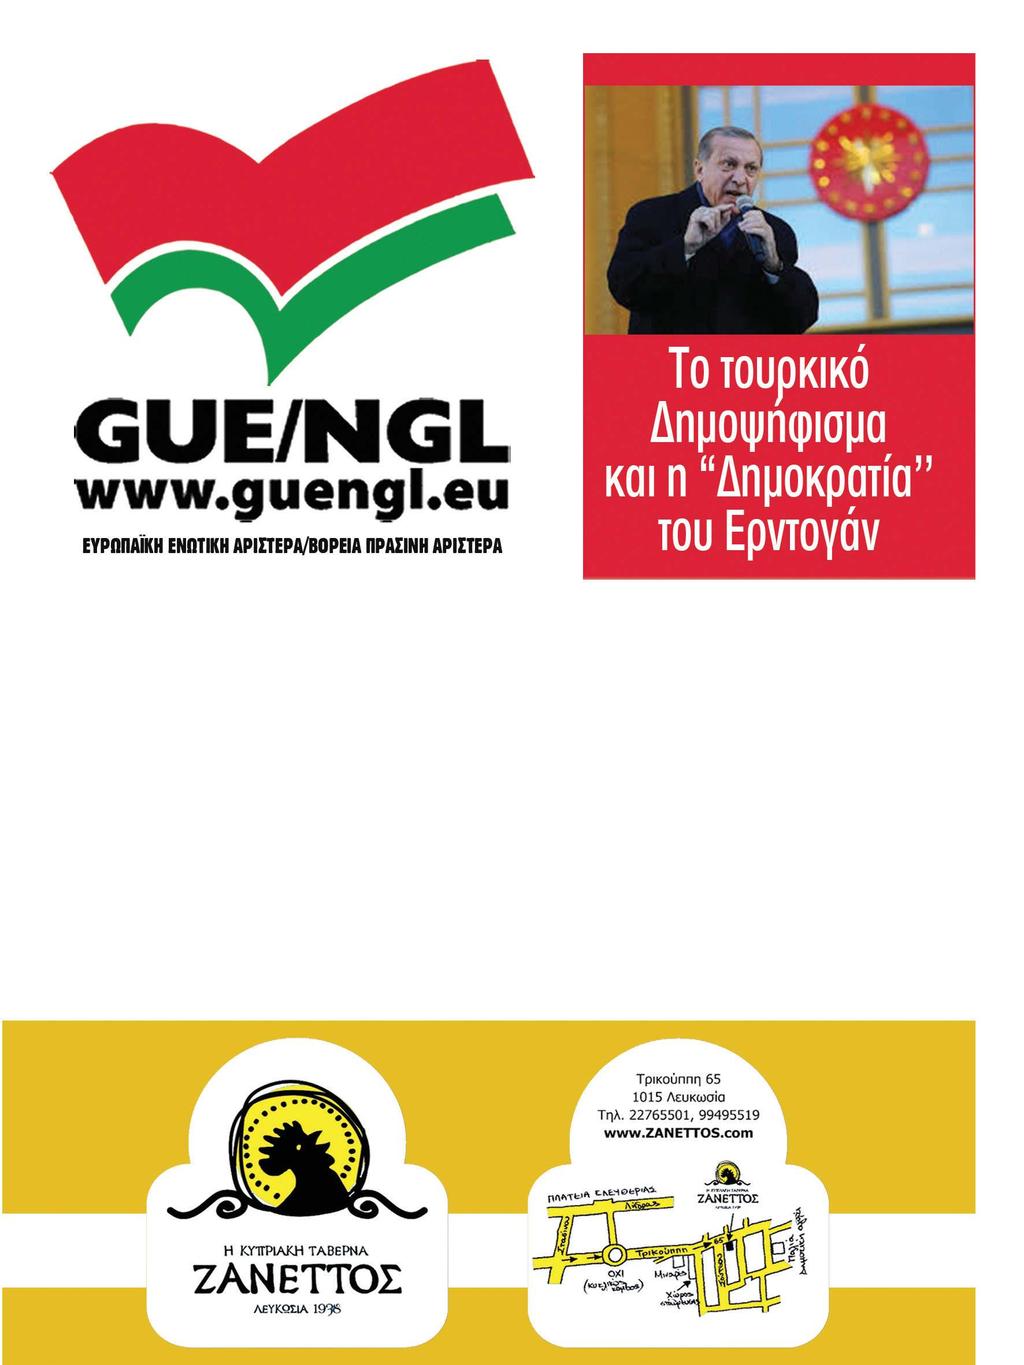 10 ευρωπαϊκά θέματα ΗΠρόεδρος της Ομάδας GUE / NGL Gabi Zimmer, εξέφρασε την απογοήτευση και την έντονη ανησυχία της για τα αποτελέσματα του τουρκικού δημοψηφίσματος.